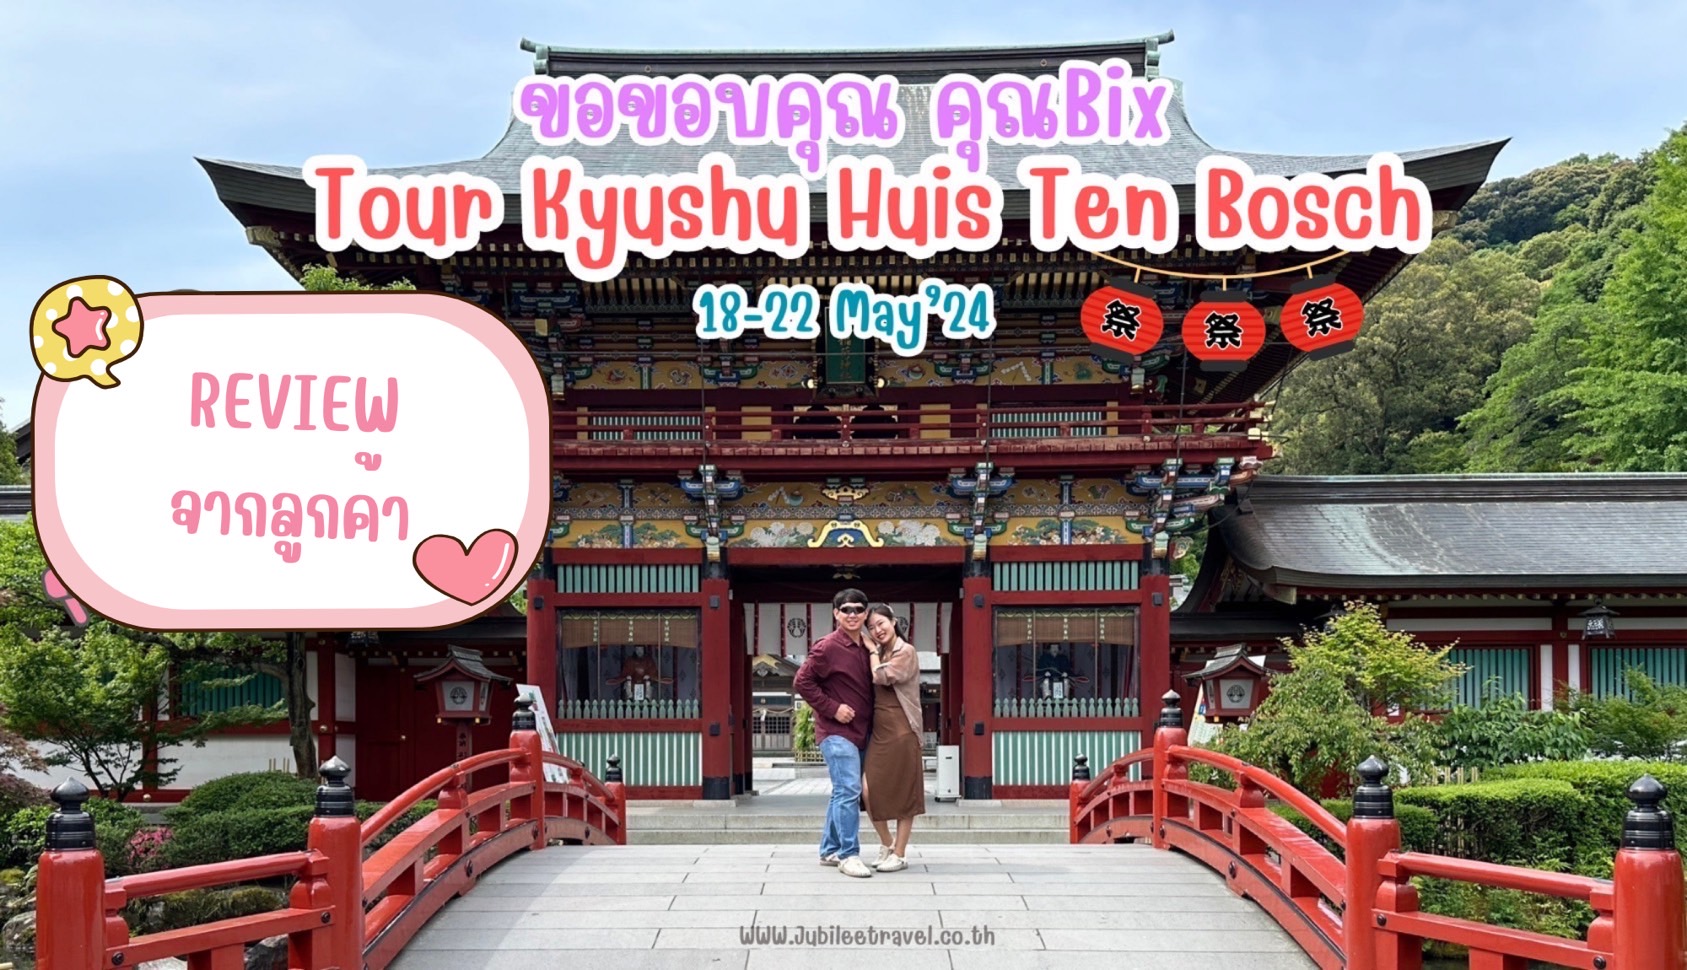 รีวิวจากลูกค้า : คุณบิ๊ก Tour Kyushu Huis Ten Bosch 18-22 May’24